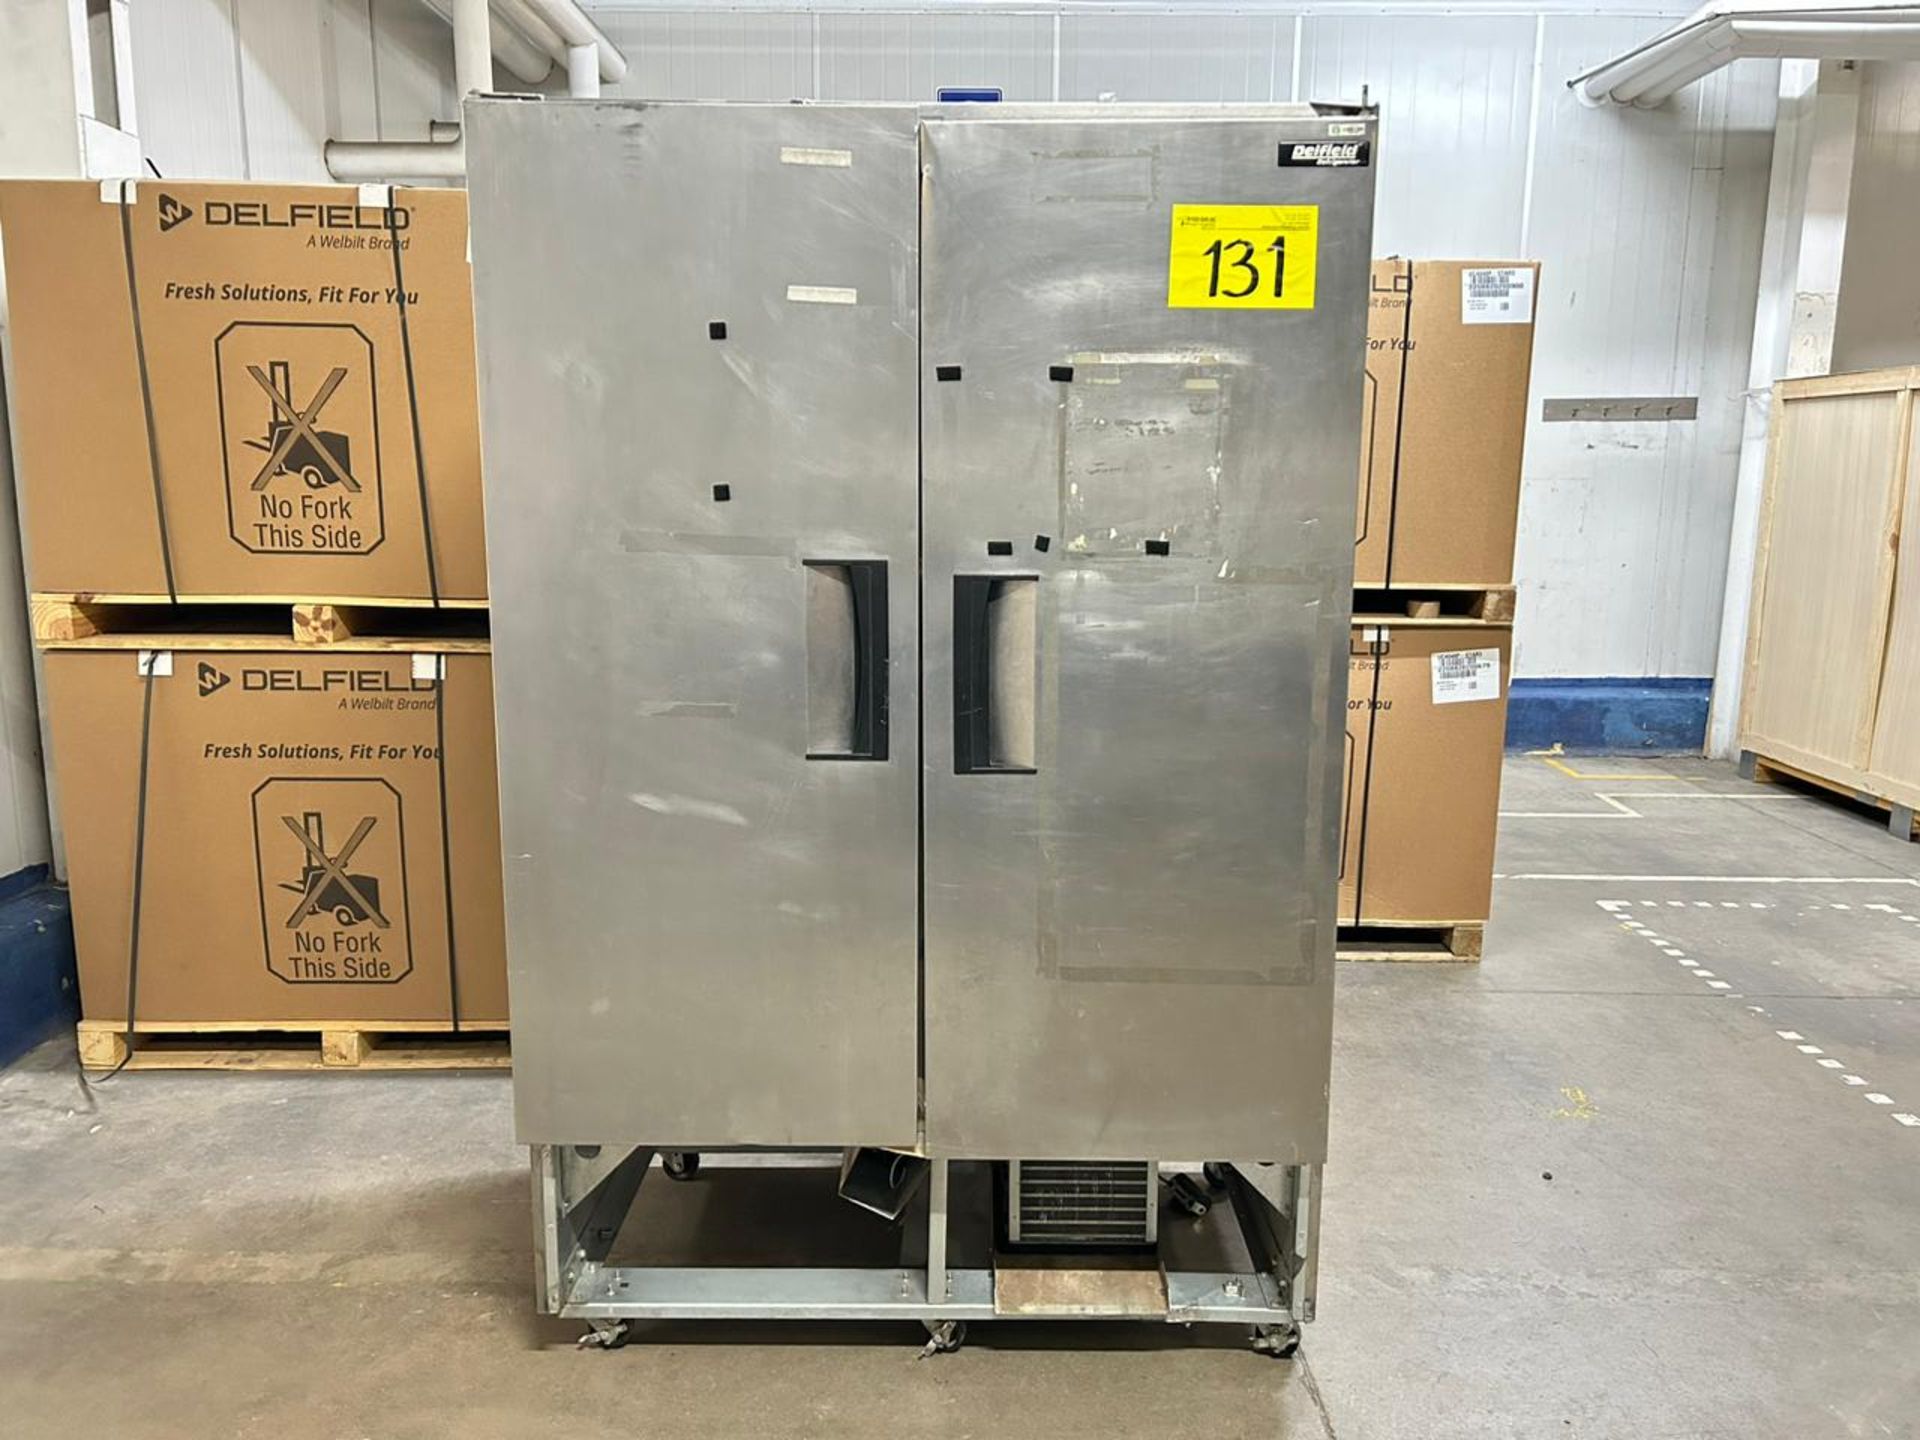 1 refrigerador sin Marca, sin Modelo, sin Serie, Medidas 130 cm x 88 cm 207 cm (Puertas desarmadas)